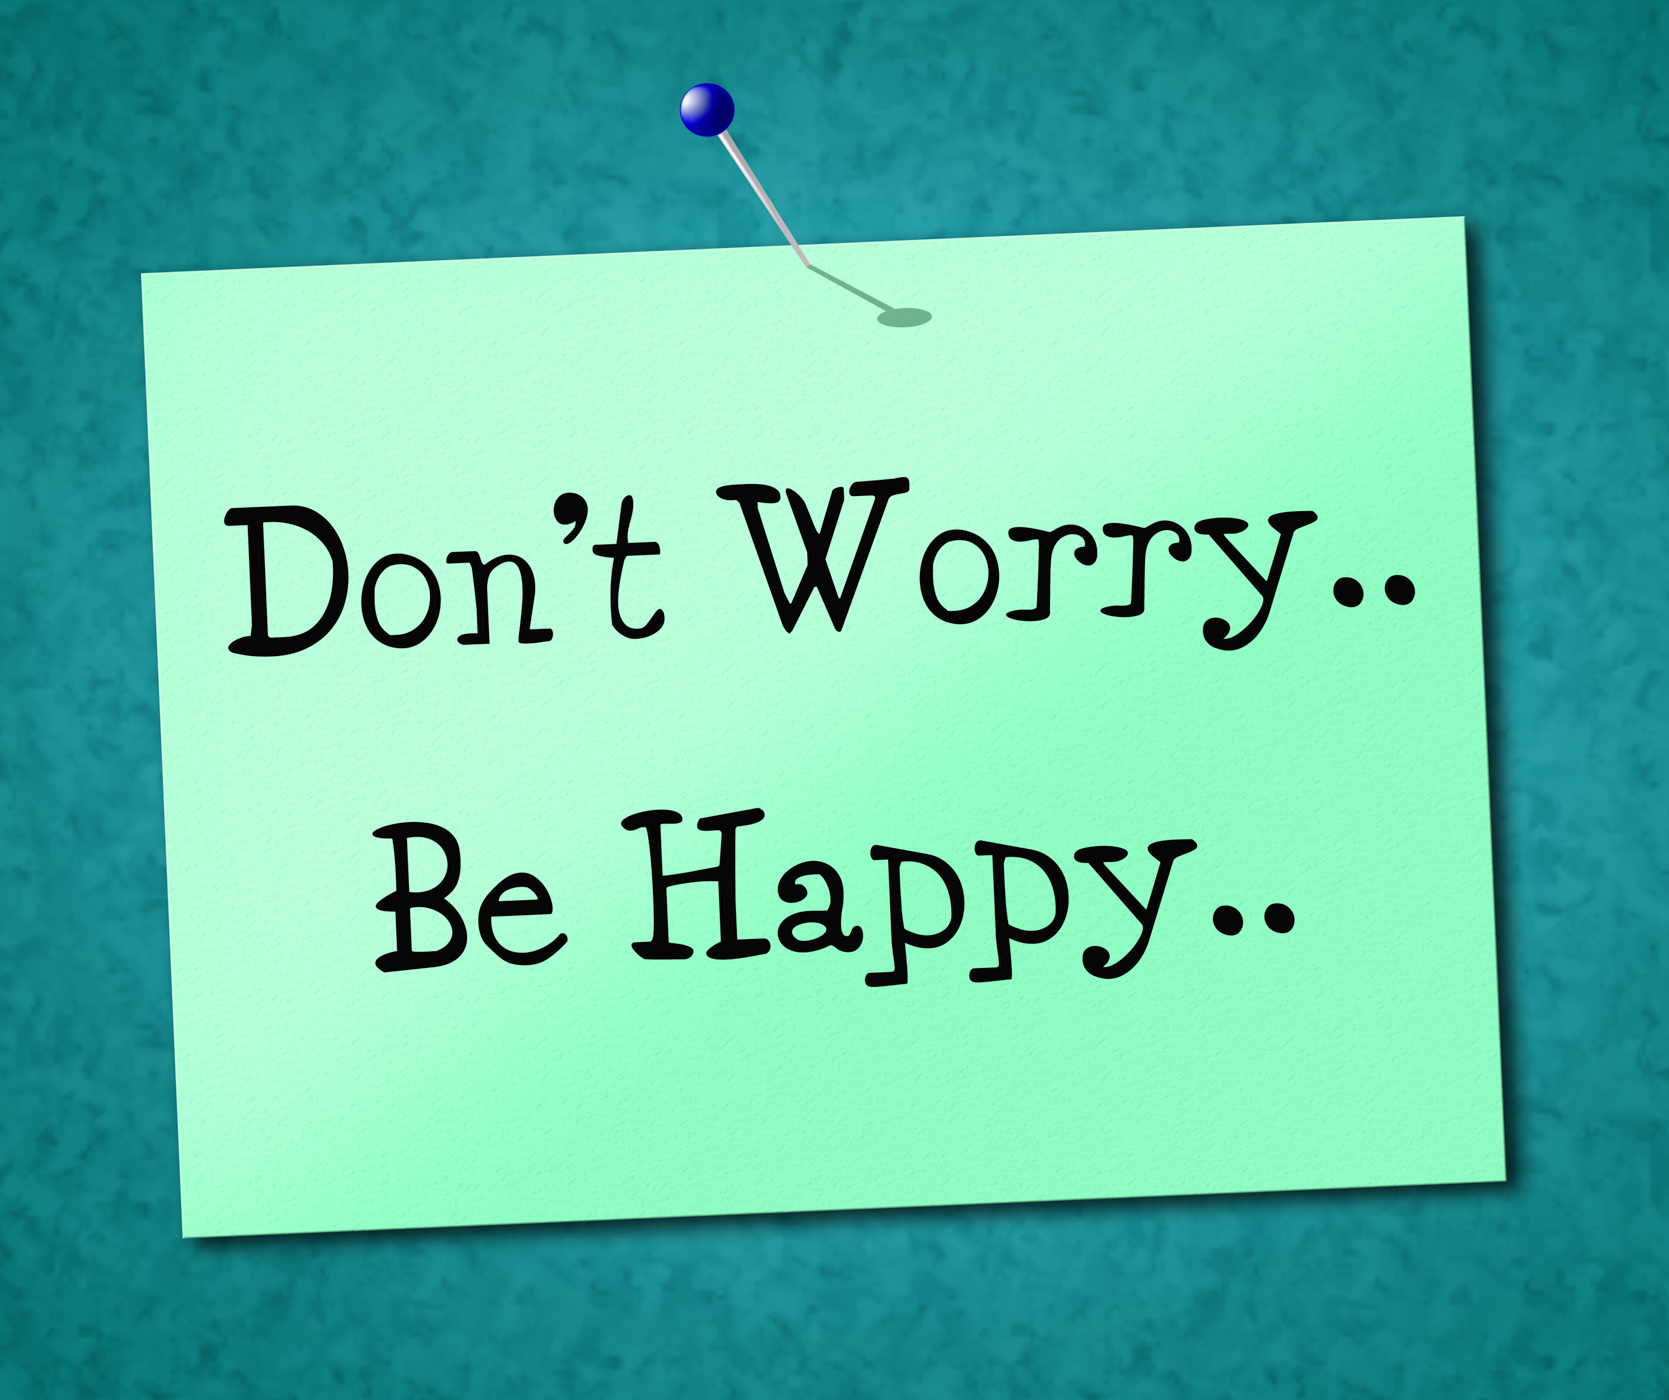 Включи be happy. Be Happy. Don't worry be Happy. Don't worry be Happy картинки. Be Happy открытка.